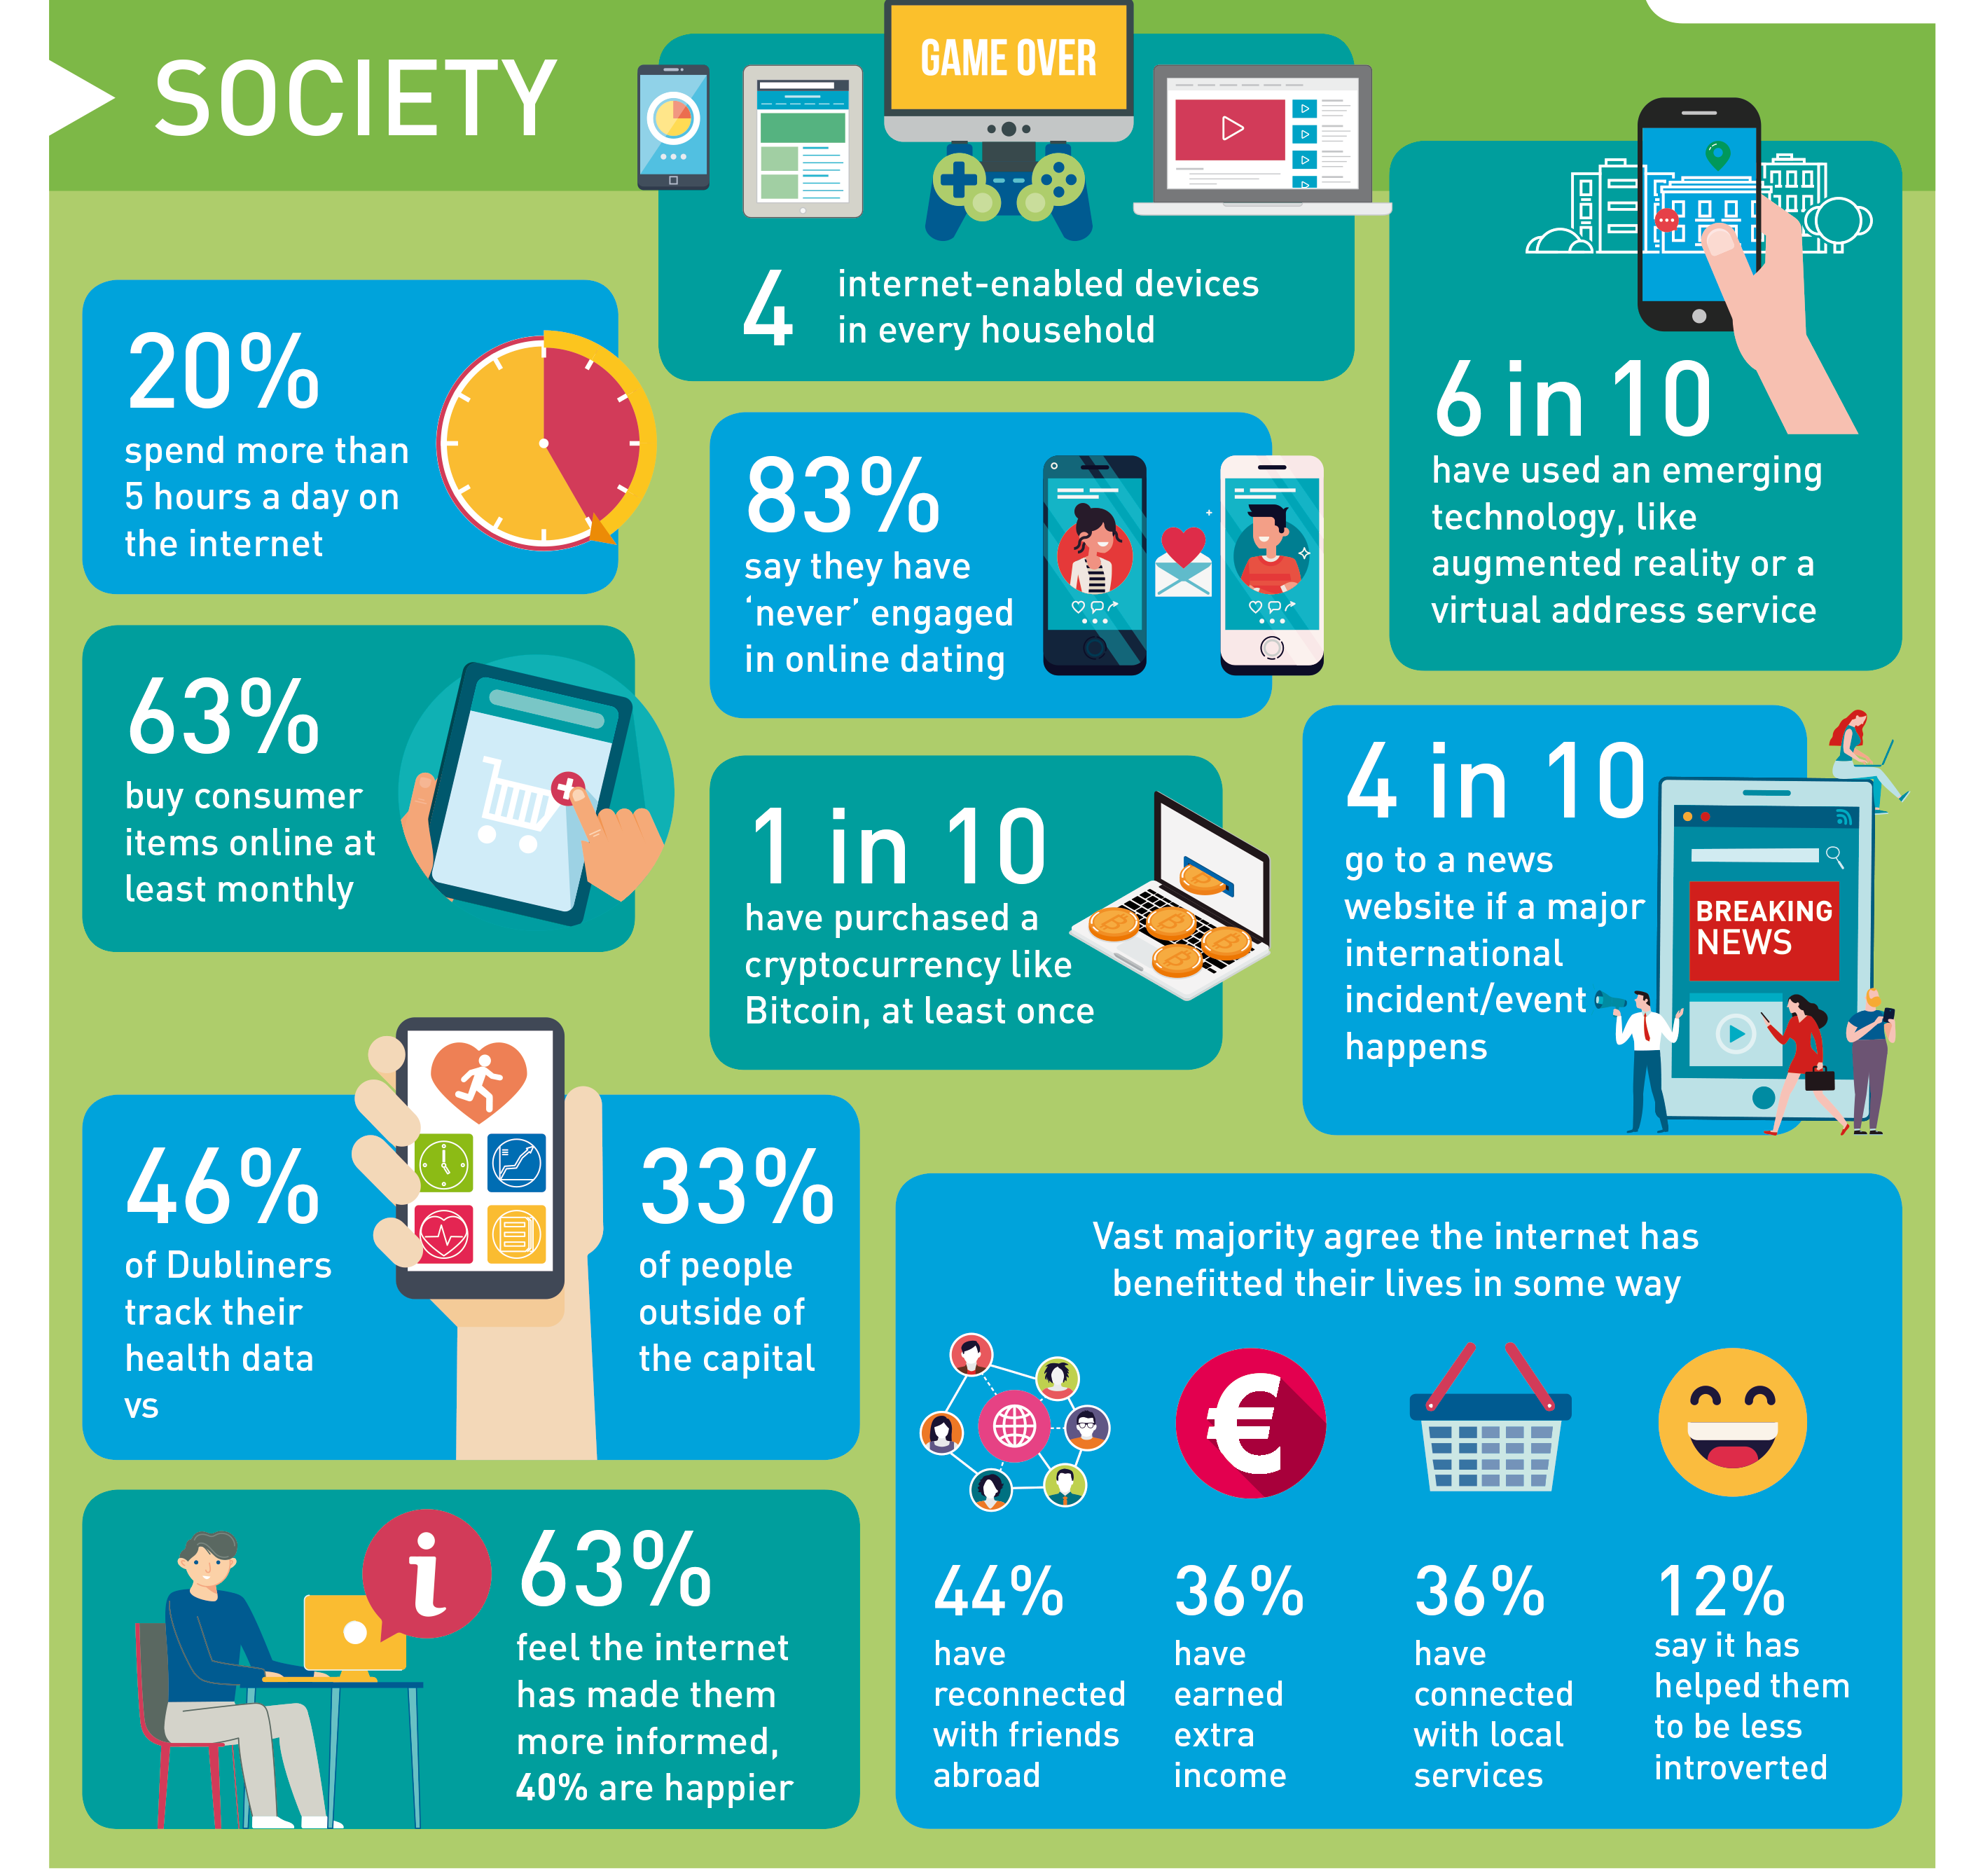 Digital Trends in Ireland 2018 Infographic